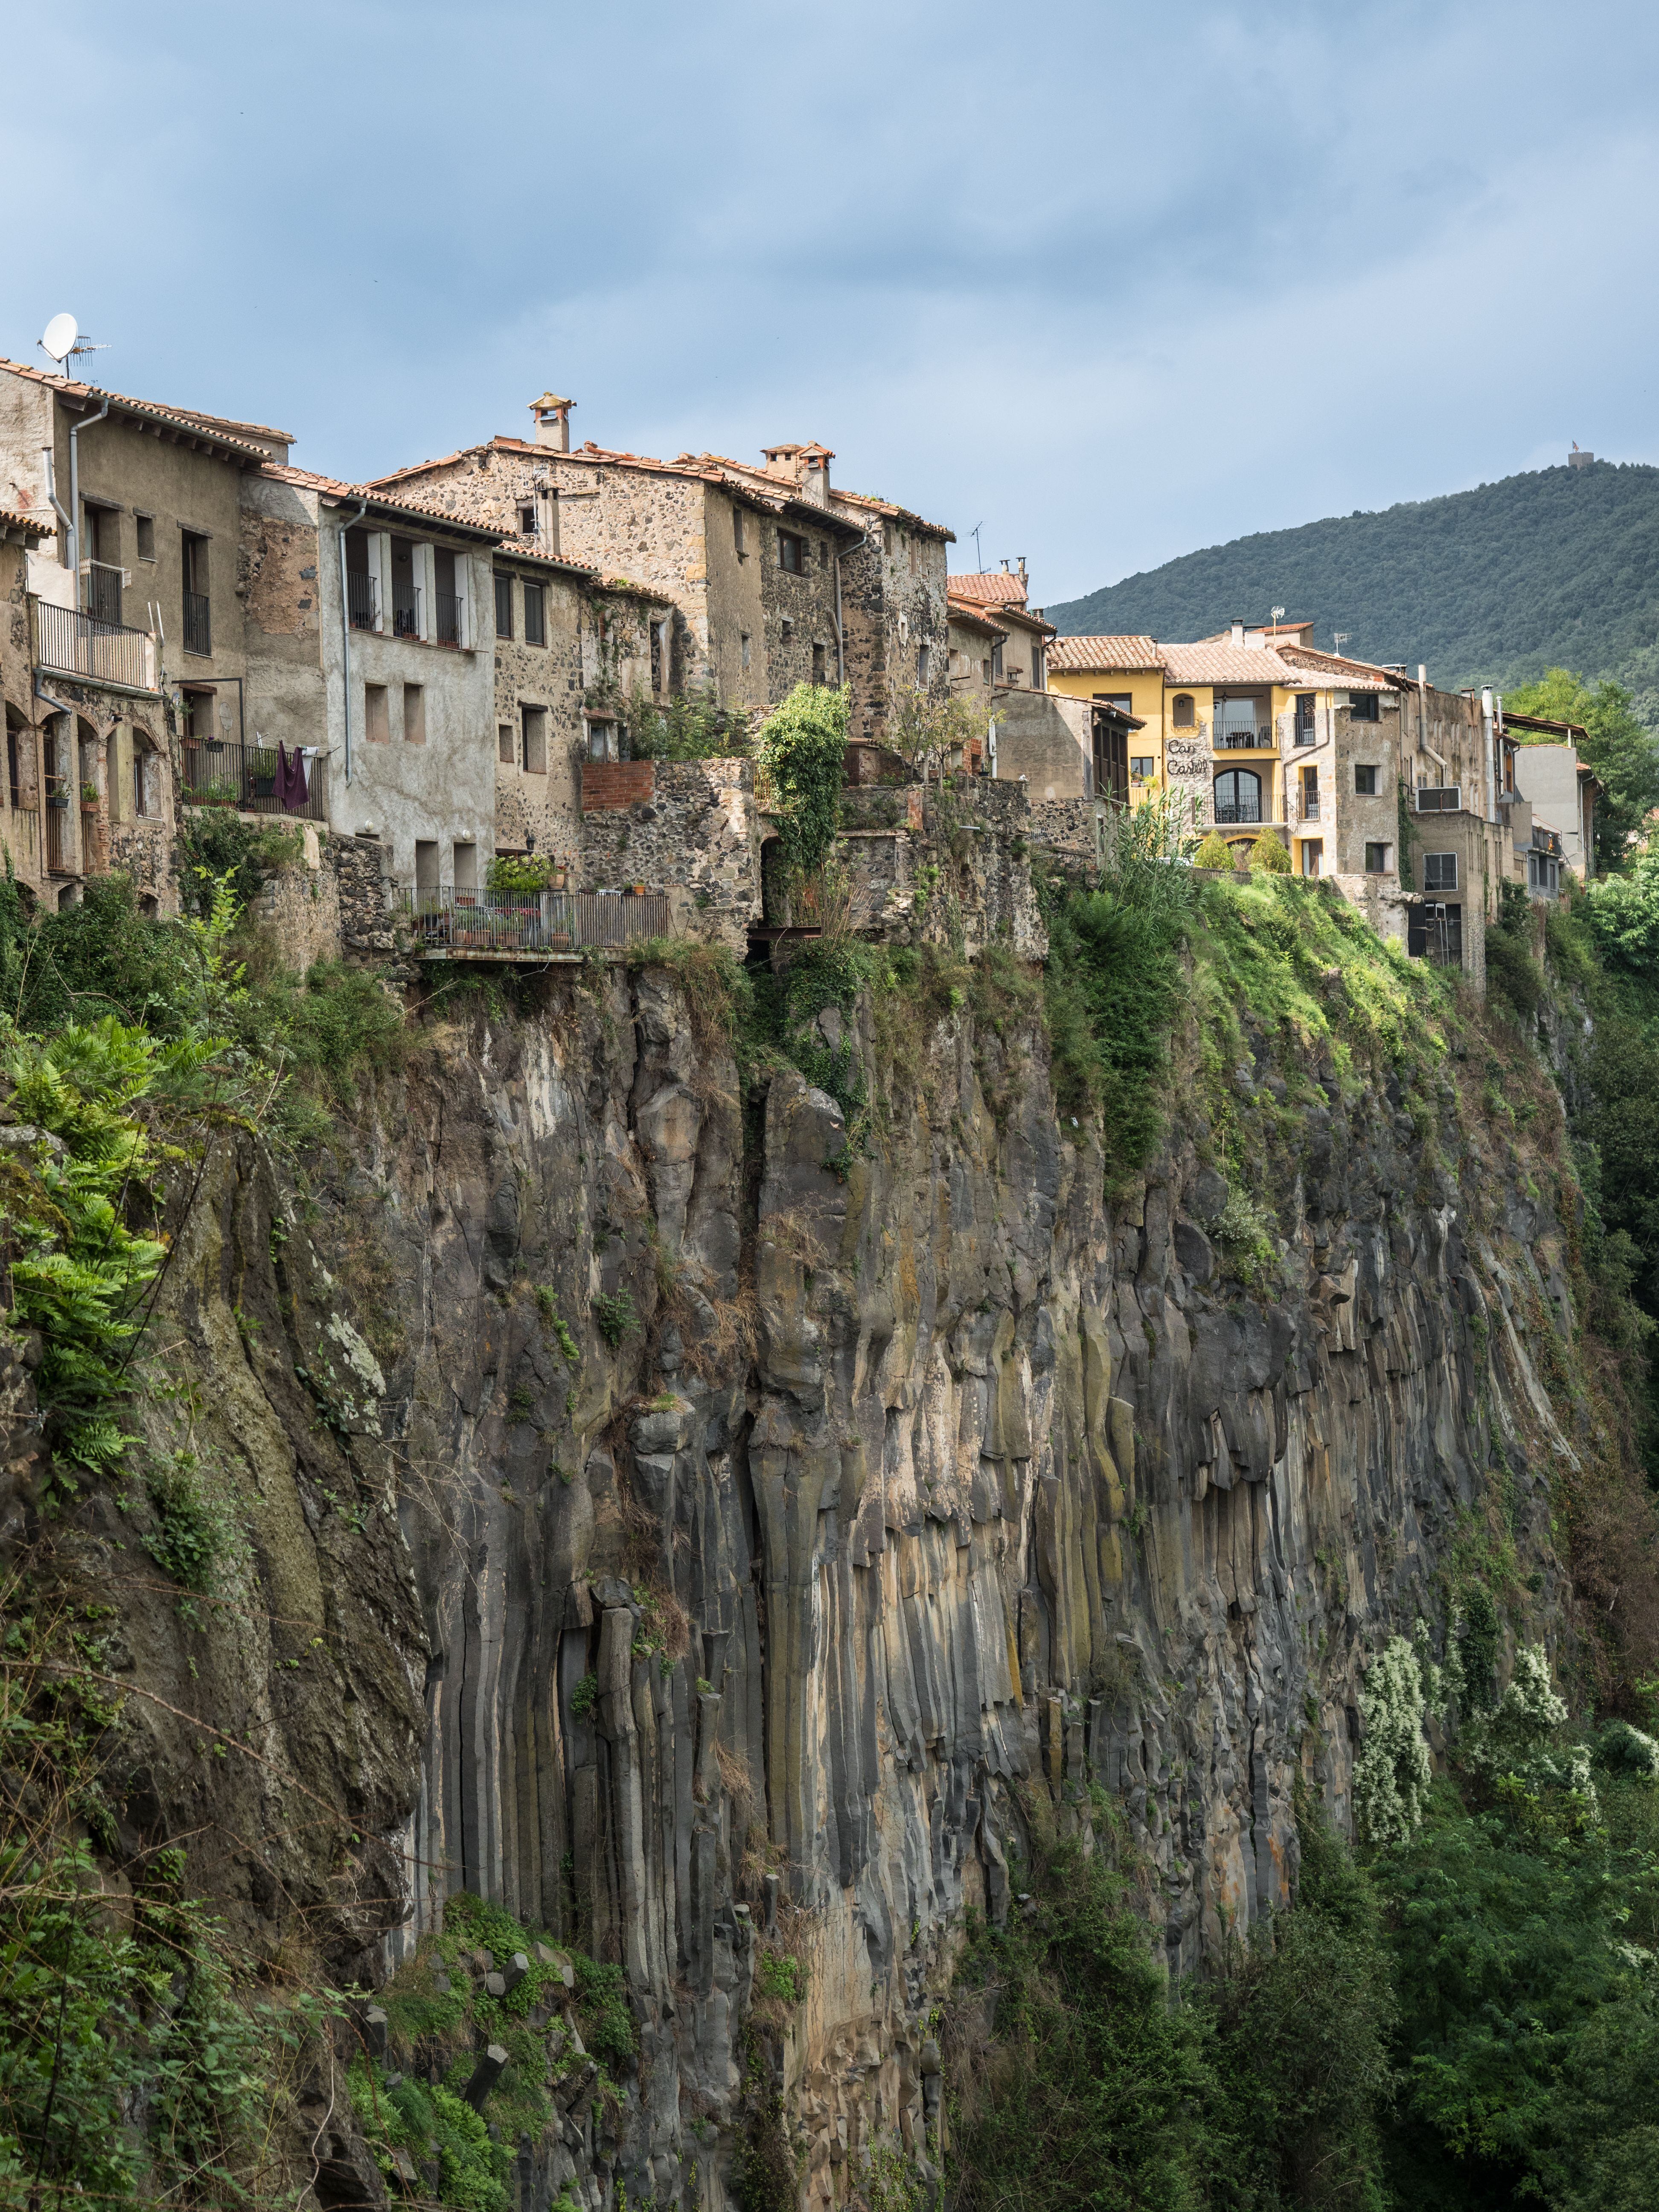 Vista vertical de una hilera de casas sobre un acantilado de basalto en el pueblo de Castellfolit de la Roca.